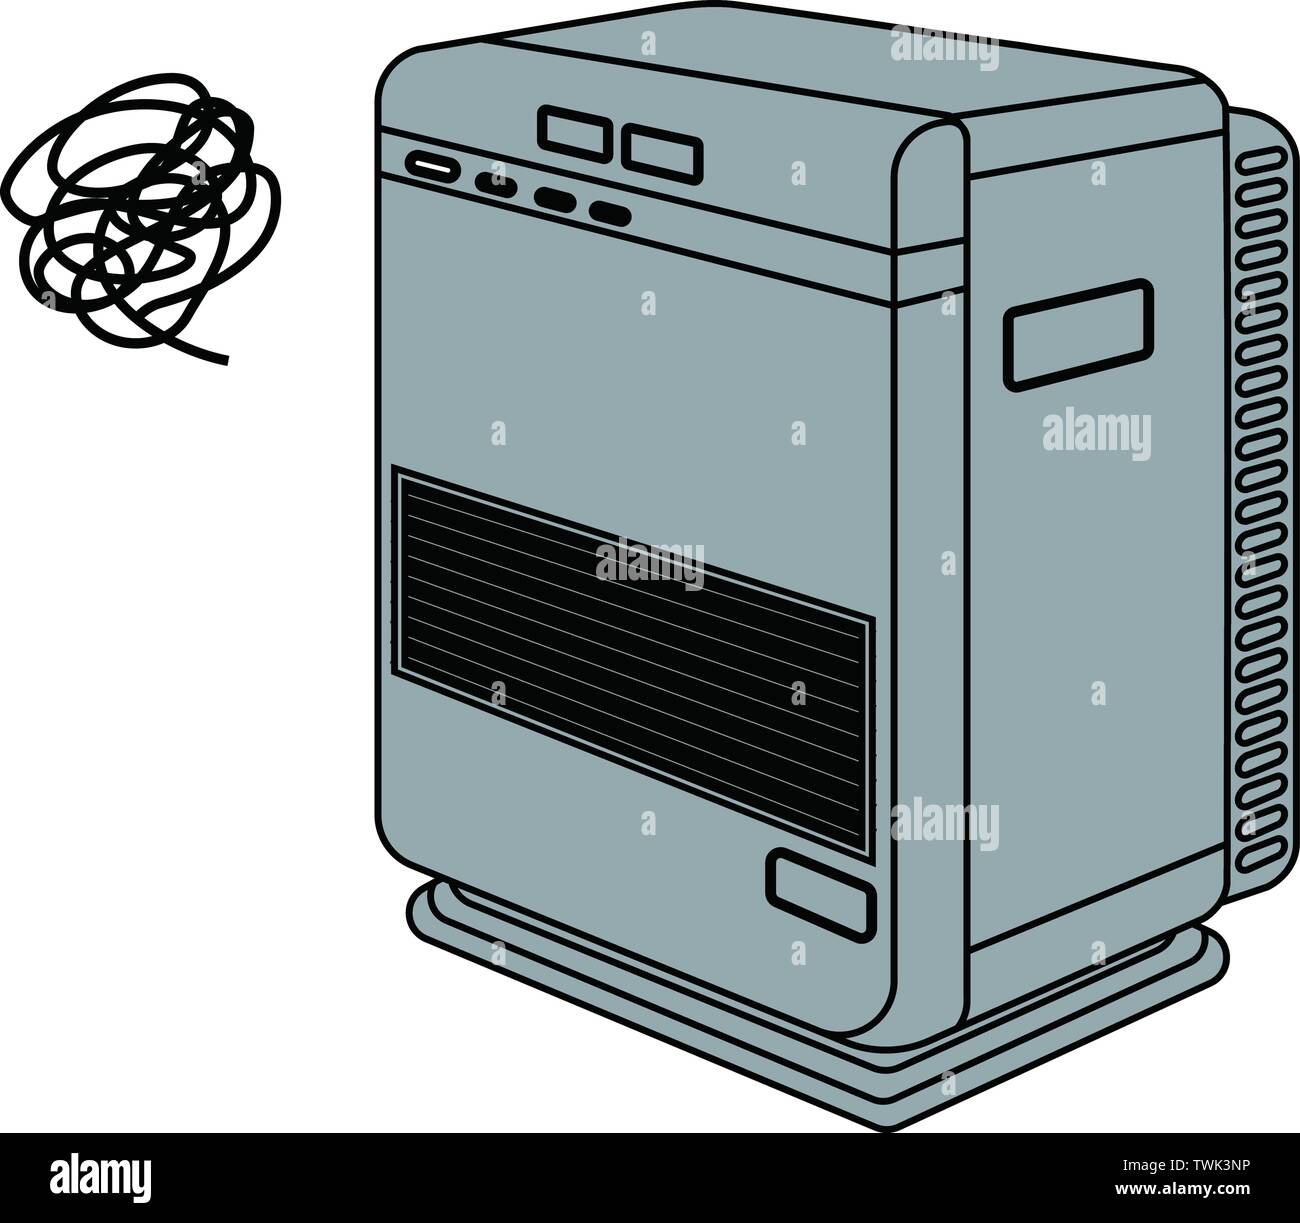 Questa è una illustrazione di un riscaldatore dell'olio. Illustrazione Vettoriale